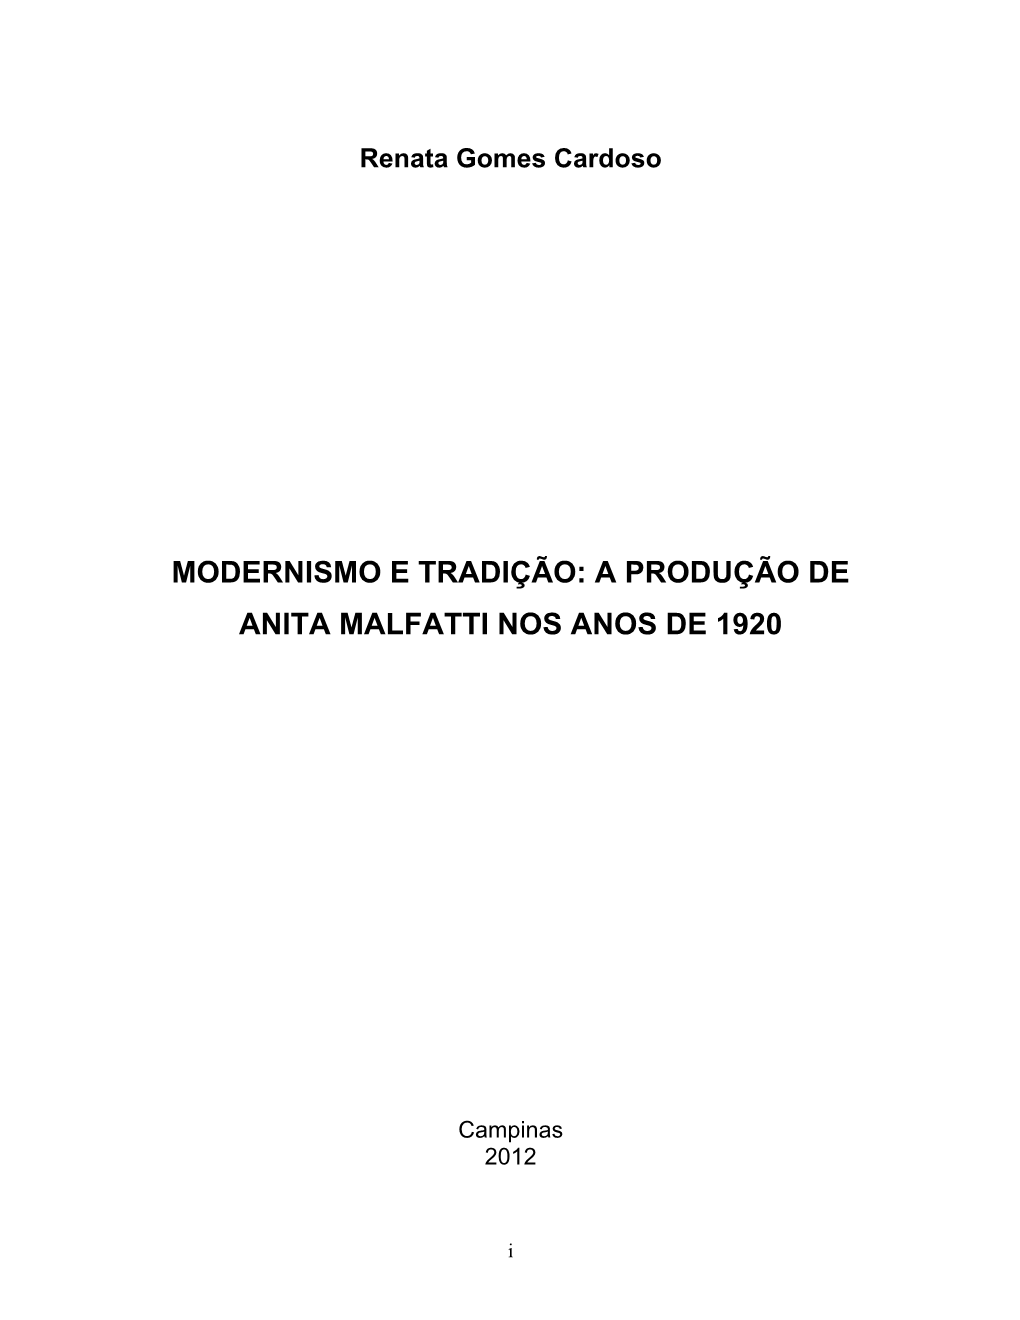 Modernismo E Tradição: a Produção De Anita Malfatti Nos Anos De 1920